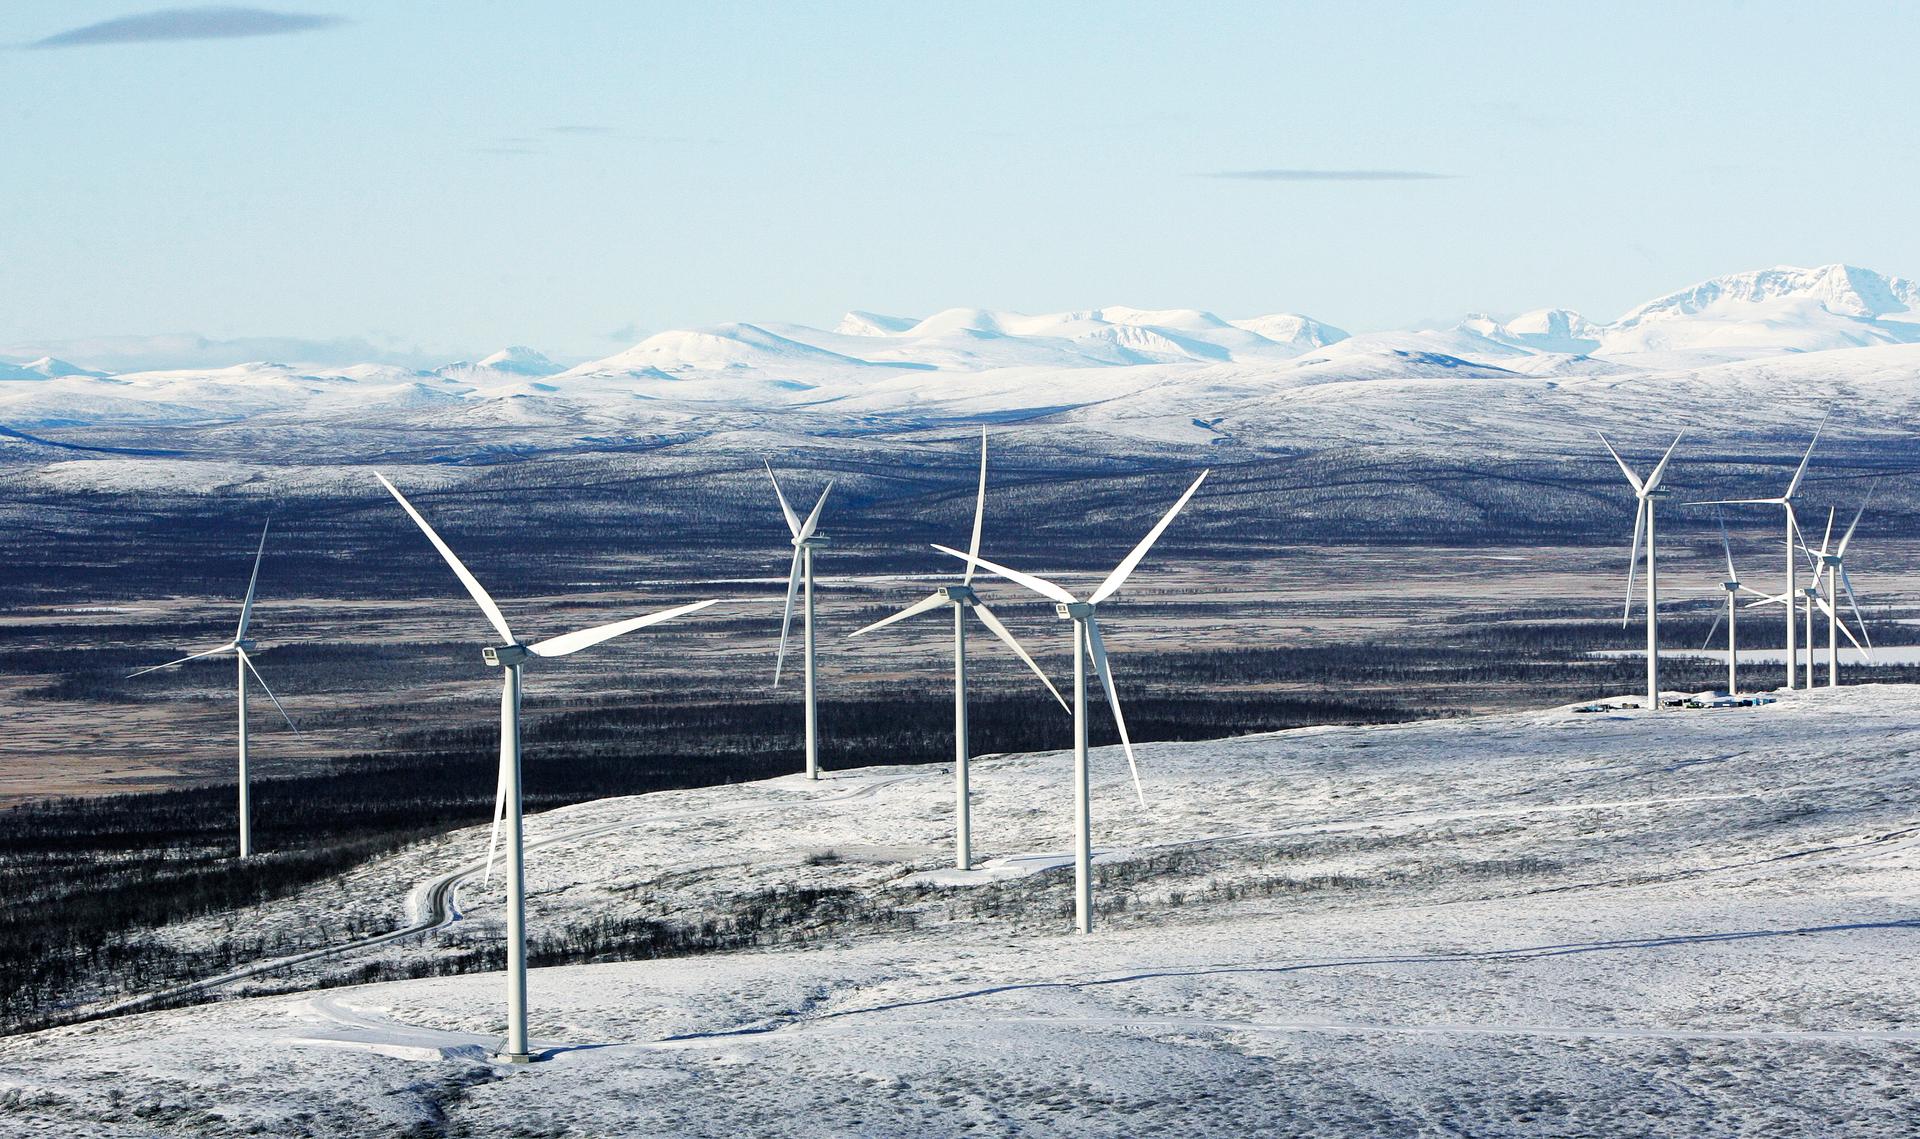 Sjisjka vindkraftspark i Gällivare kommun, Norrbotten. Sjisjka är Jämtkrafts näst största vindkraftspark med 30 vindkraftverk och en årlig produktion på cirka 173 GWh.